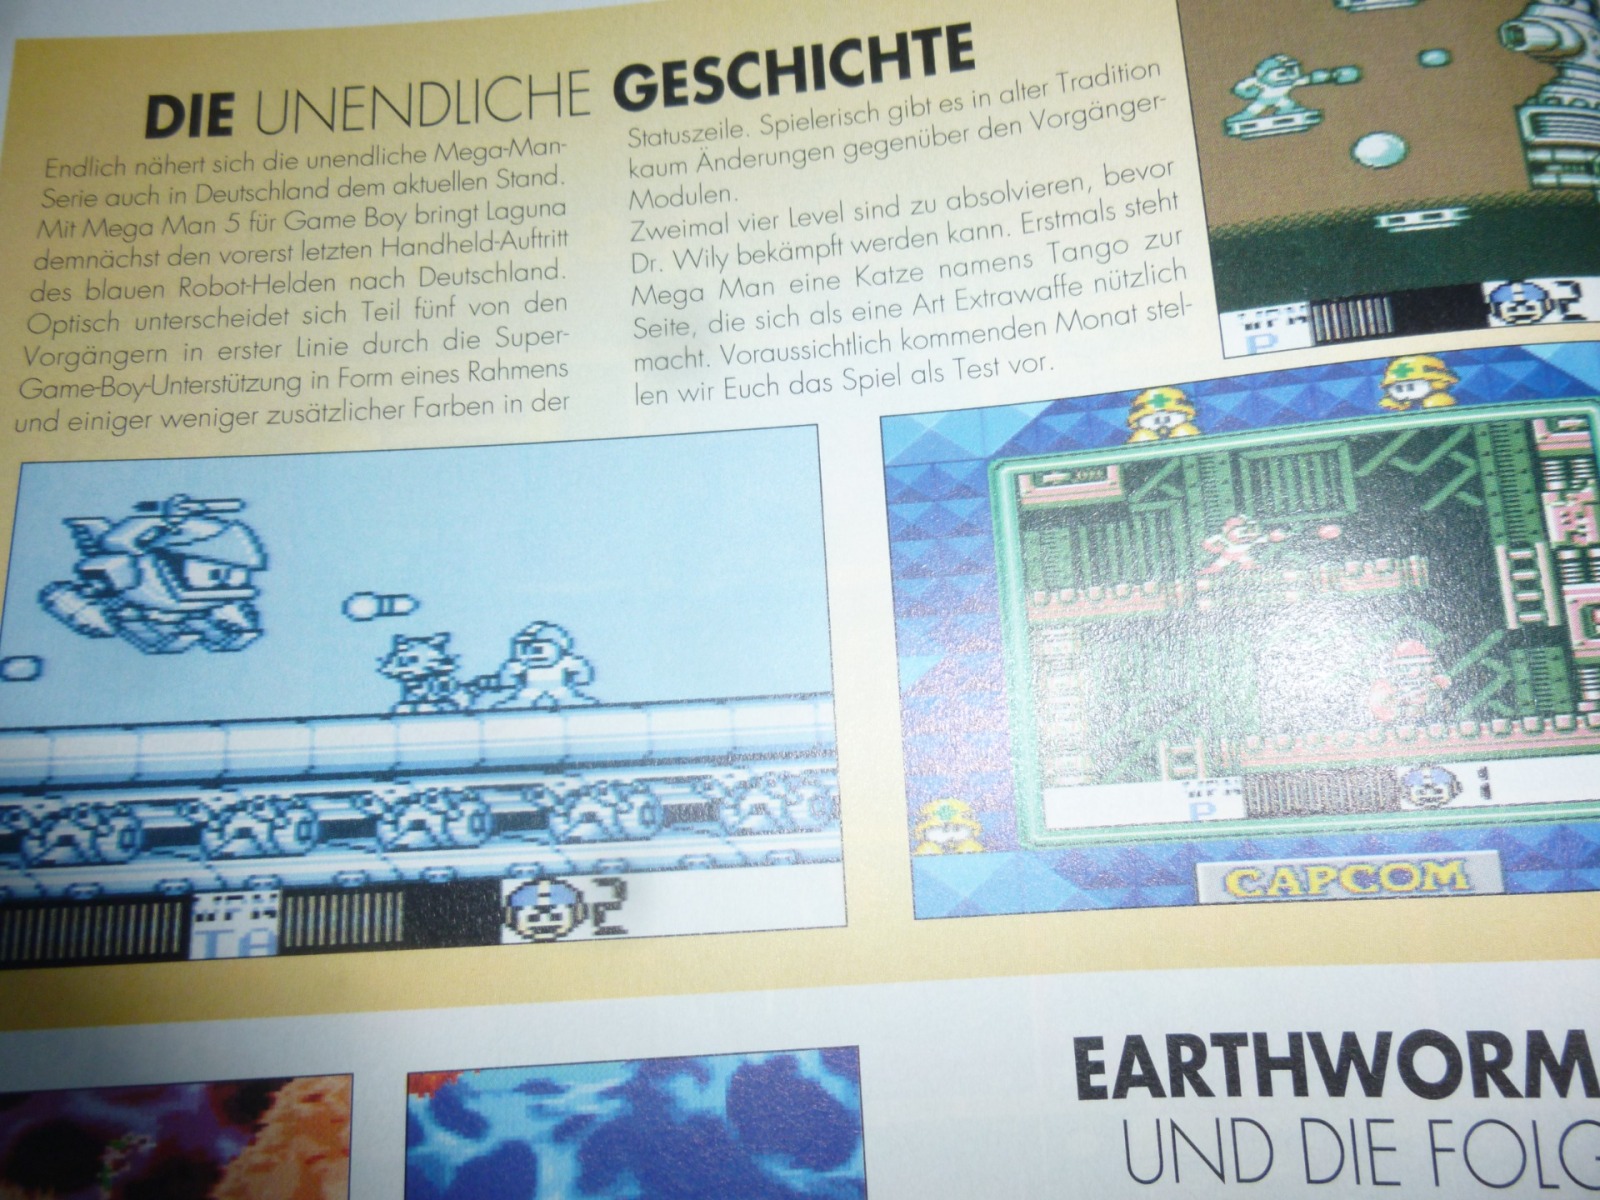 TOTAL Das unabhängige Magazin - 100% Nintendo - Ausgabe 4/96 1996 4